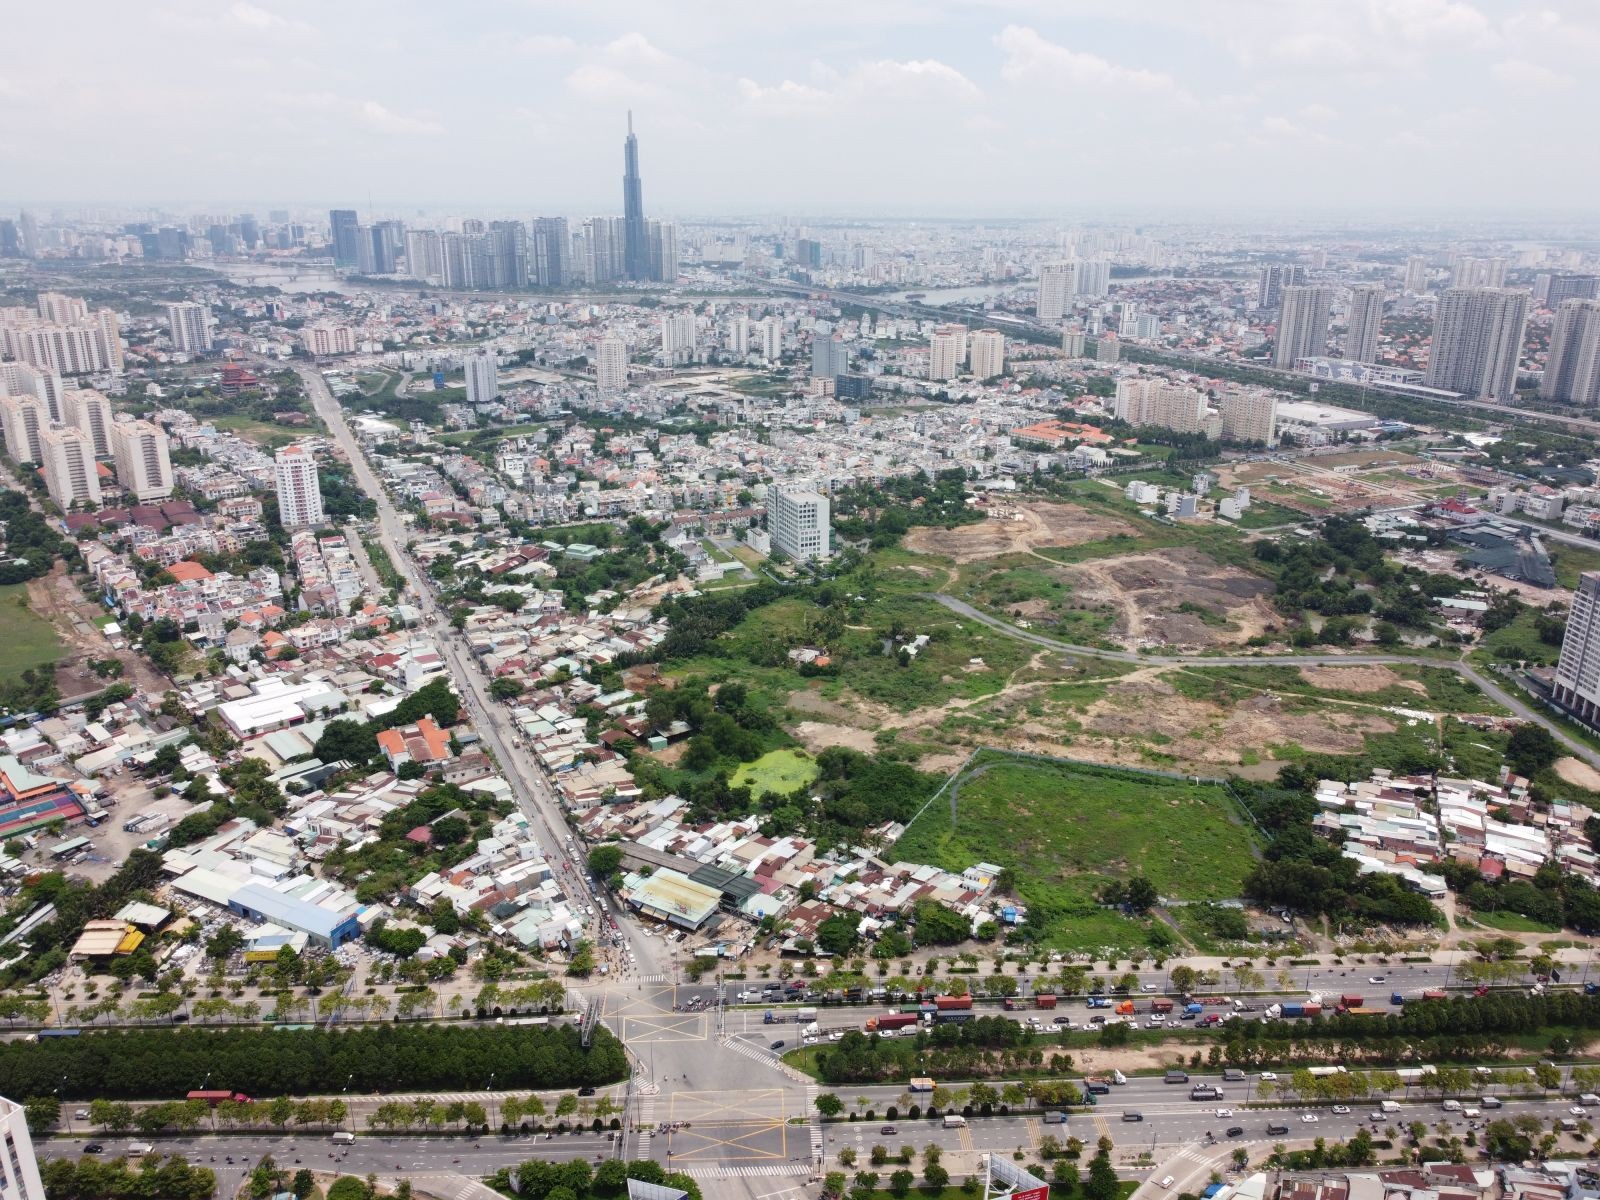 
Cần khẩn trương xem xét, tháo gỡ khó khăn cho một số doanh nghiệp và dự án điển hình, làm tiền lệ để giải quyết các trường hợp tương tự, tạo “niềm tin” cho doanh nghiệp và thị trường bất động sản, trong đó có 143 dự án tại thành phố Hồ Chí Minh.
